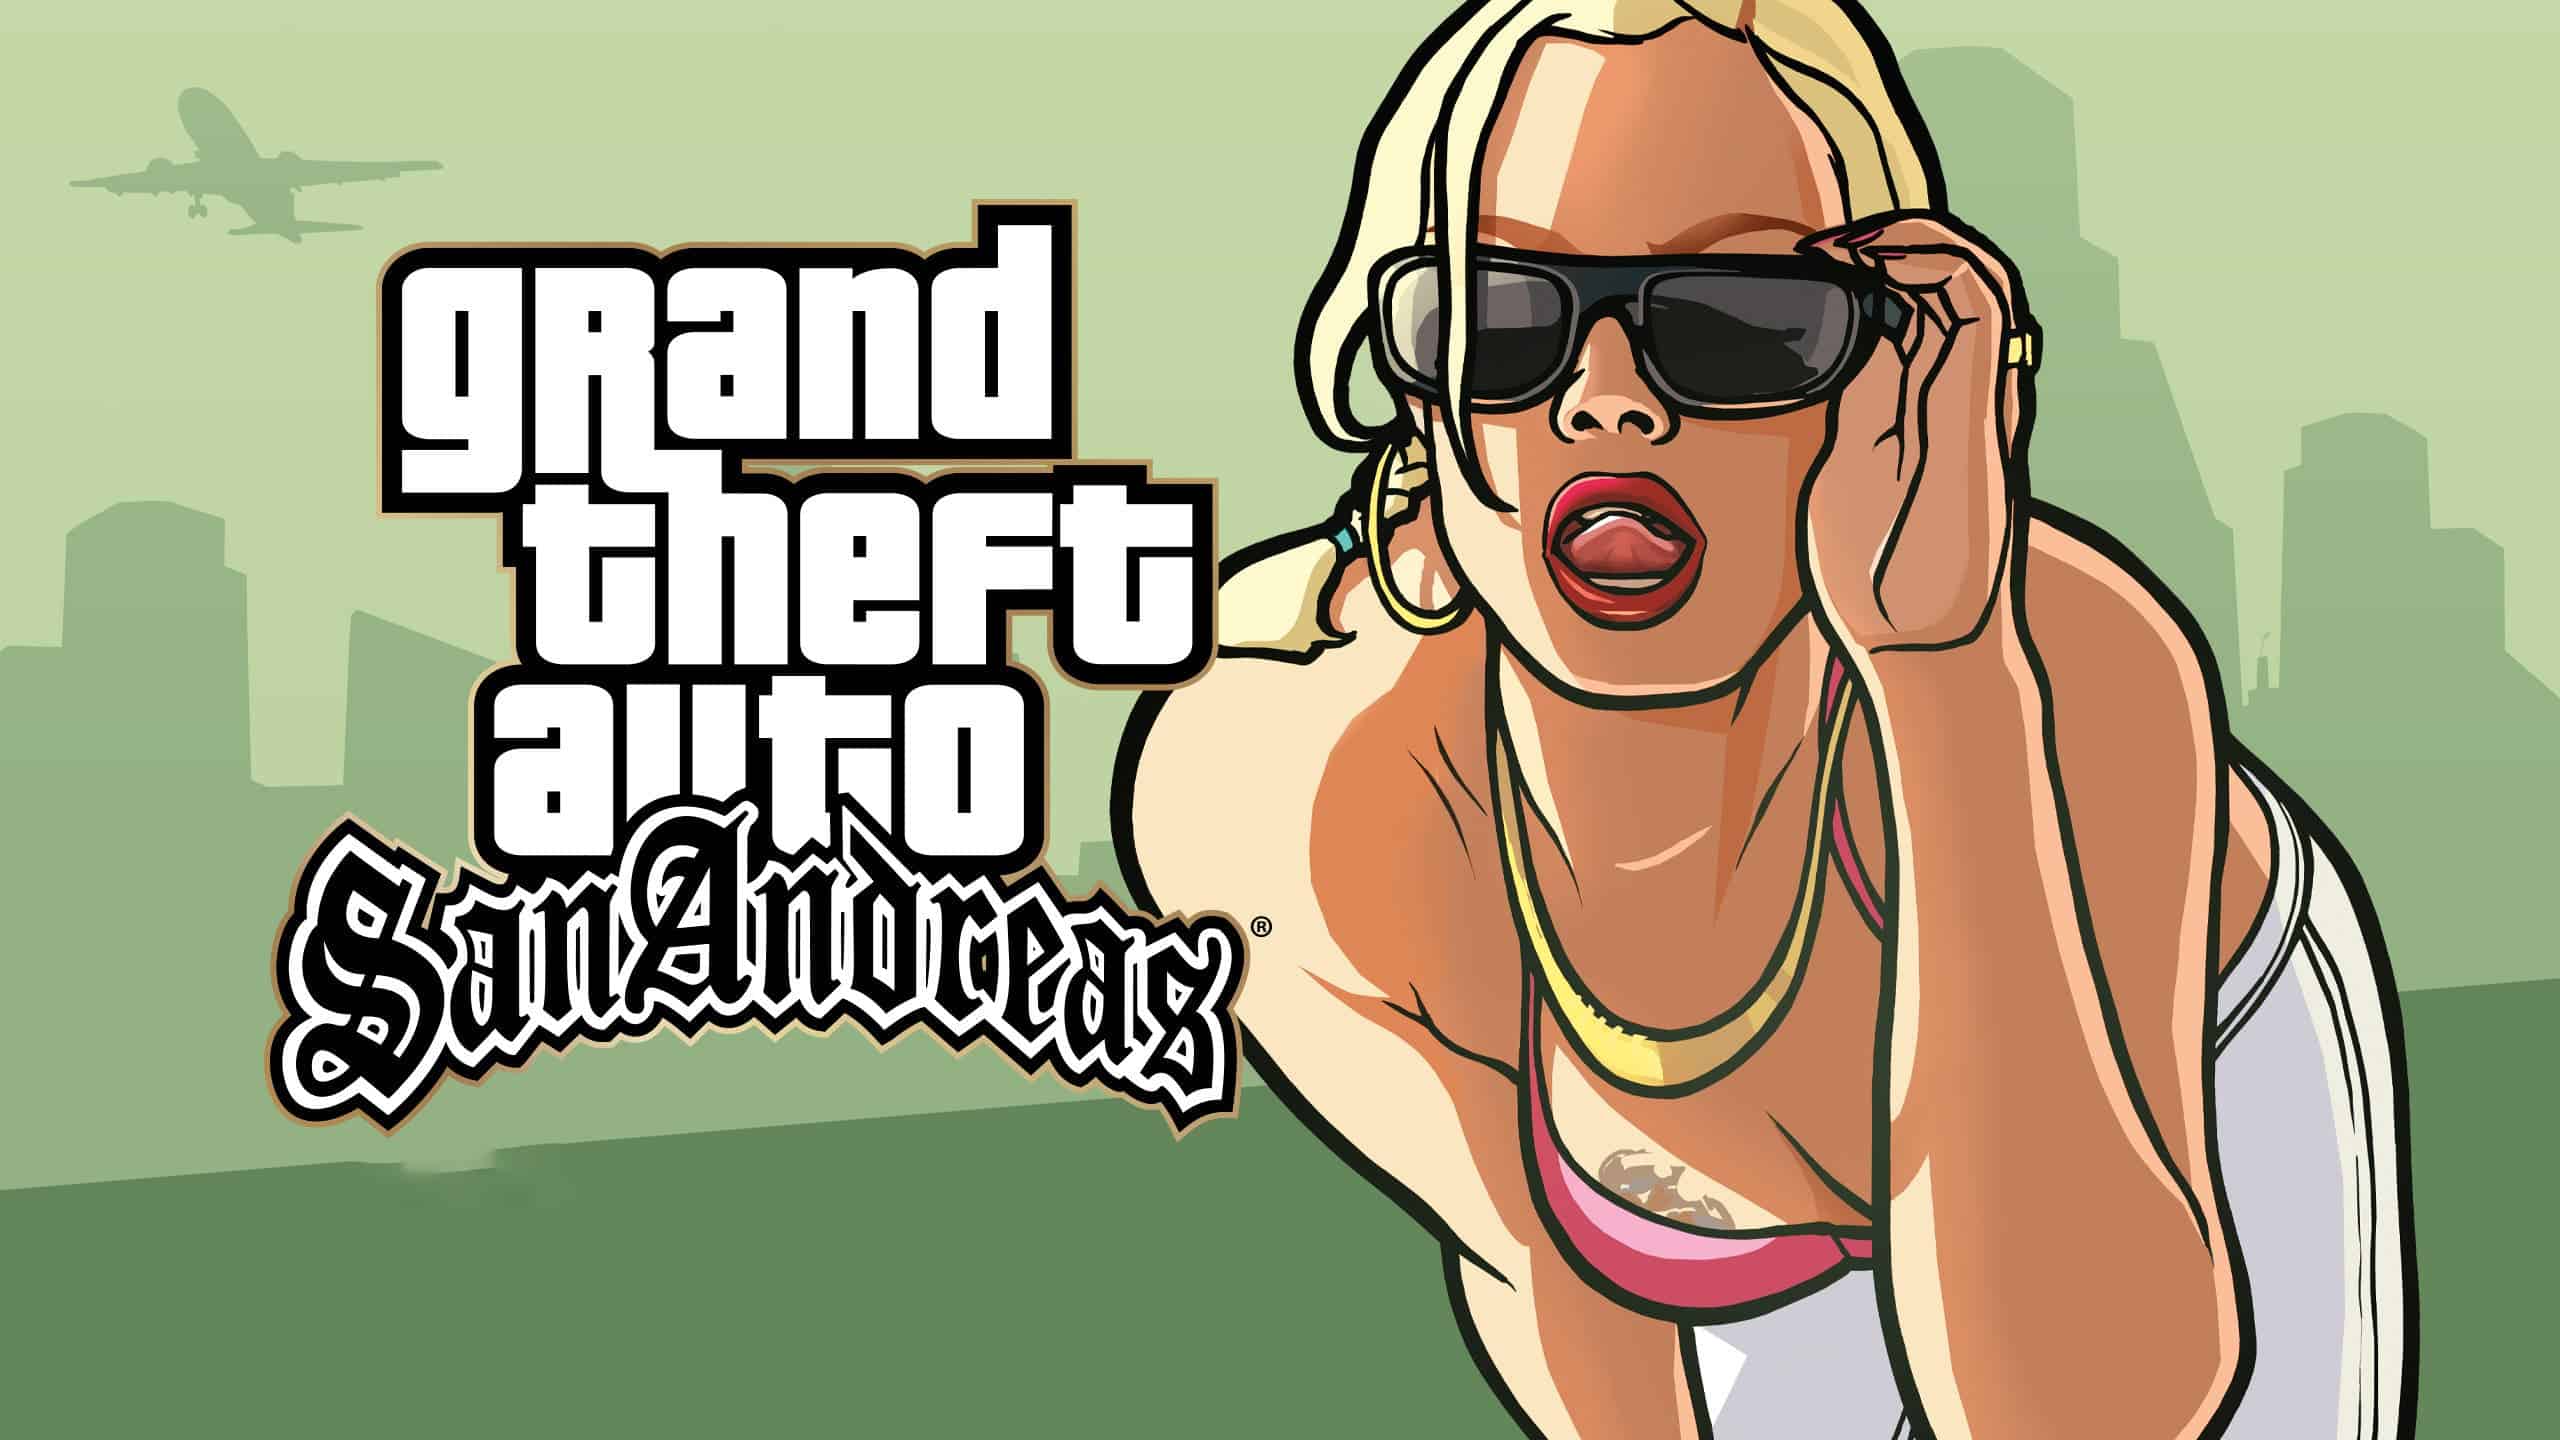 Grand Theft Auto San Andreas offline spel voor iPhone